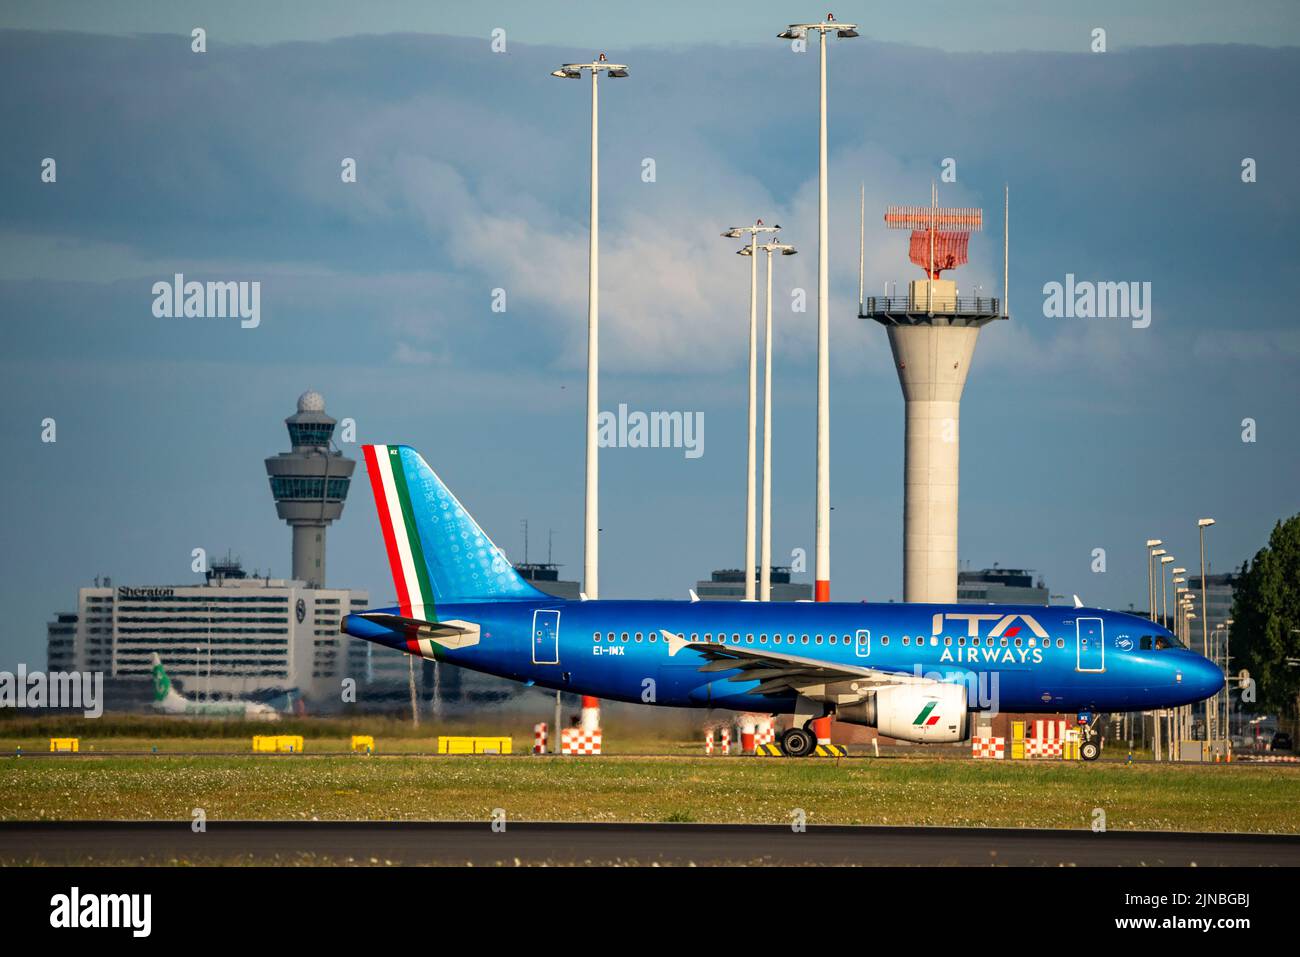 Amsterdam Shiphol Airport, Polderbaan, una de las 6 pistas, torre de control de tráfico aéreo, en la vía de taxi al despegue, EI-IMX, ITA Airways Airbus A319-100. Foto de stock